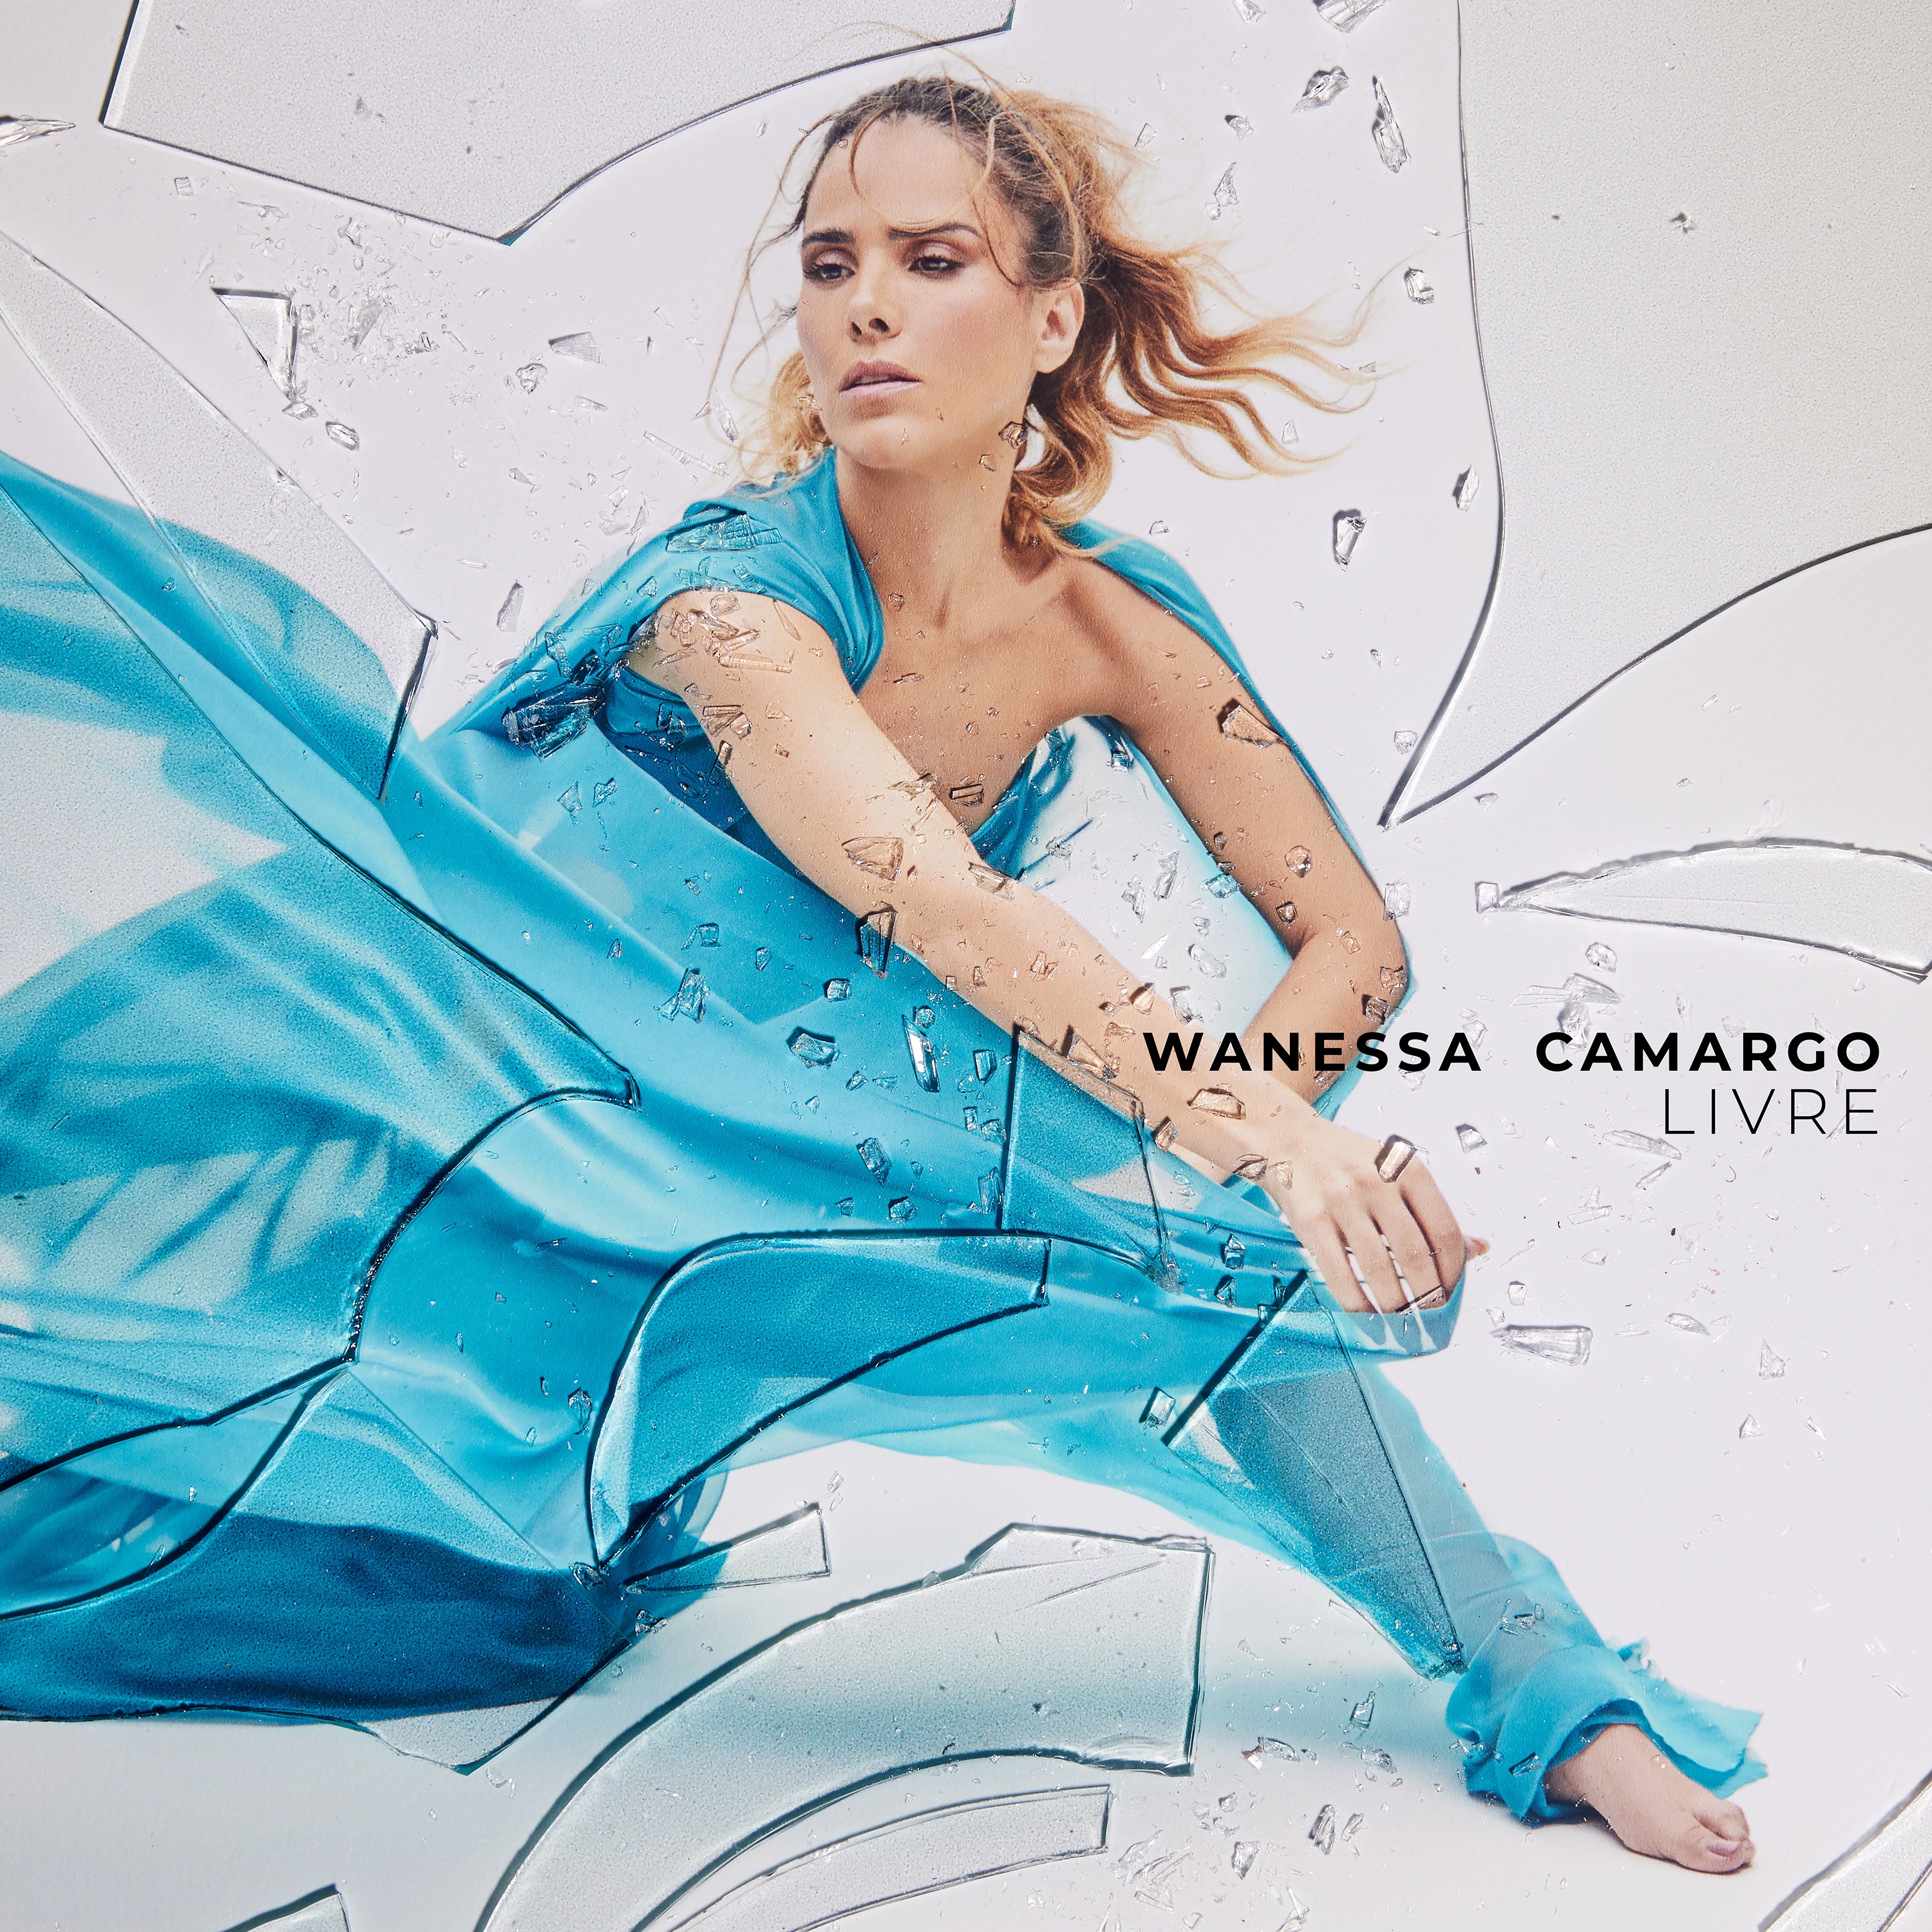 Wanessa Camargo — Livre cover artwork